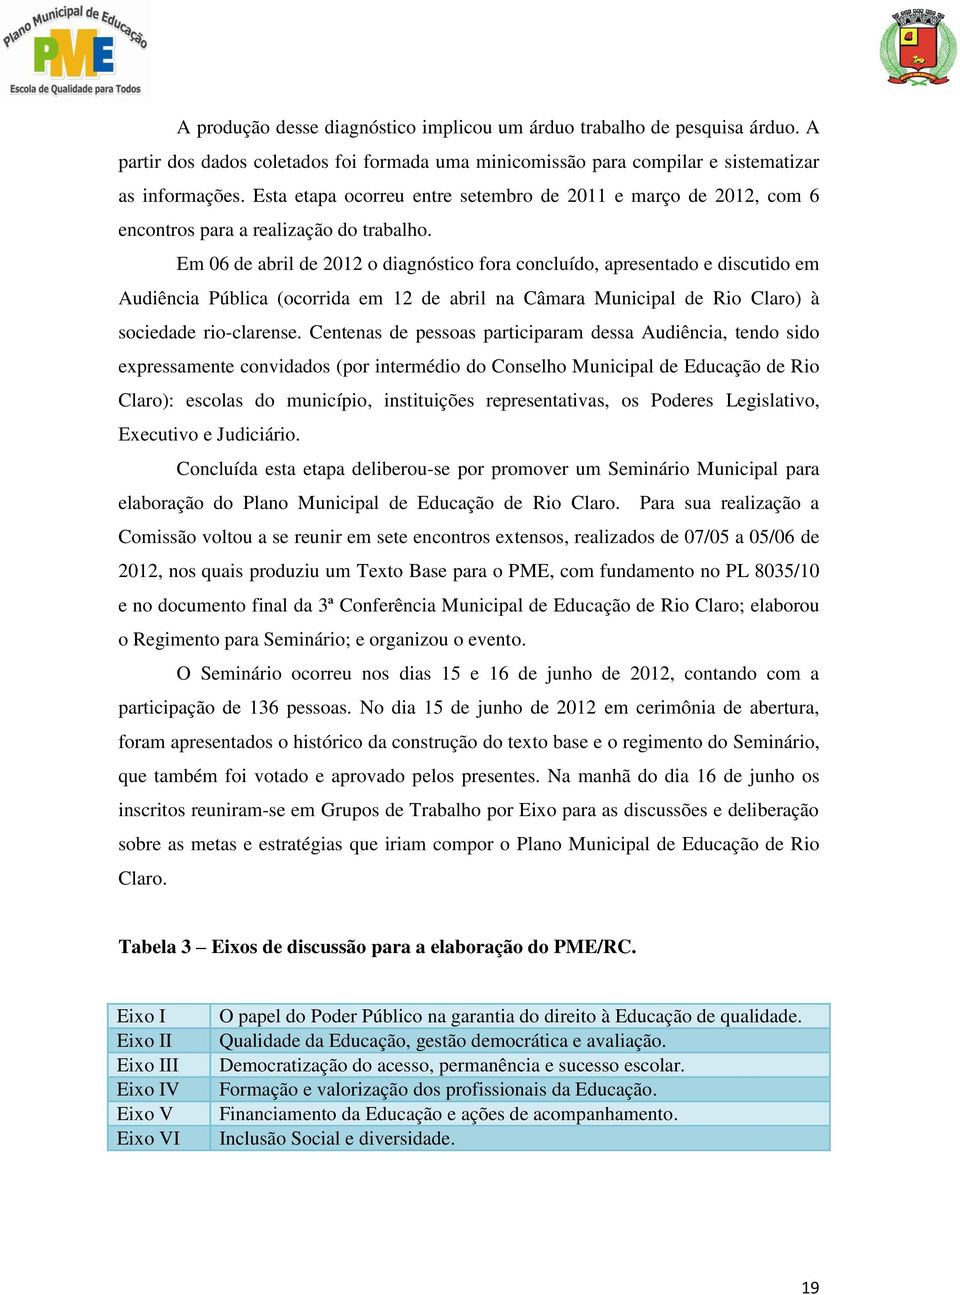 Em 06 de abril de 2012 o diagnóstico fora concluído, apresentado e discutido em Audiência Pública (ocorrida em 12 de abril na Câmara Municipal de Rio Claro) à sociedade rio-clarense.